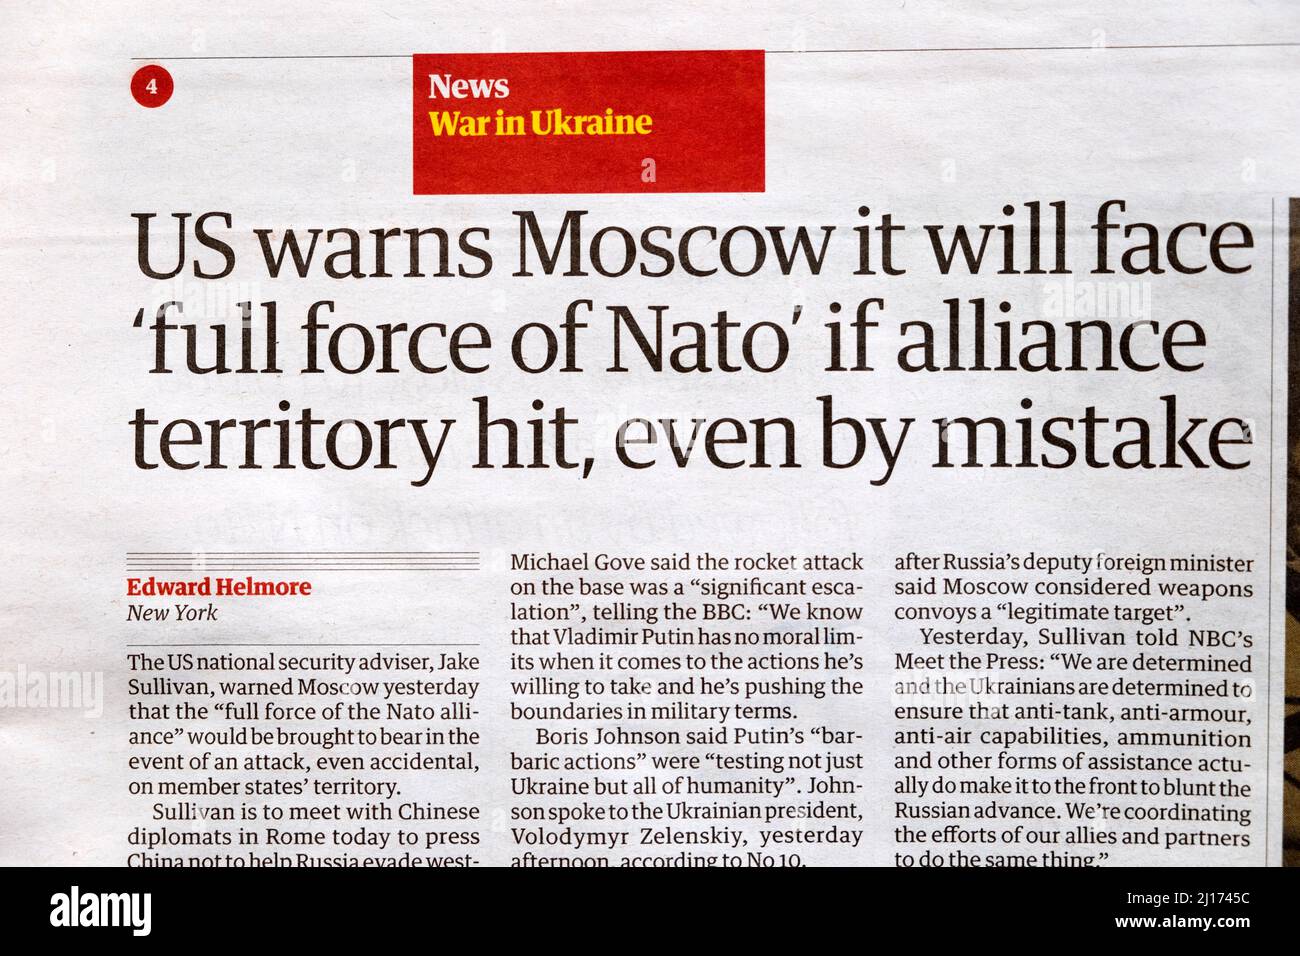 "NOI AVVERTIAMO Mosca che si trova di fronte a "piena forza della NATO" se il territorio dell'alleanza colpirà, anche per errore", titolo del giornale Guardian 14 marzo 2022 Londra UK Foto Stock